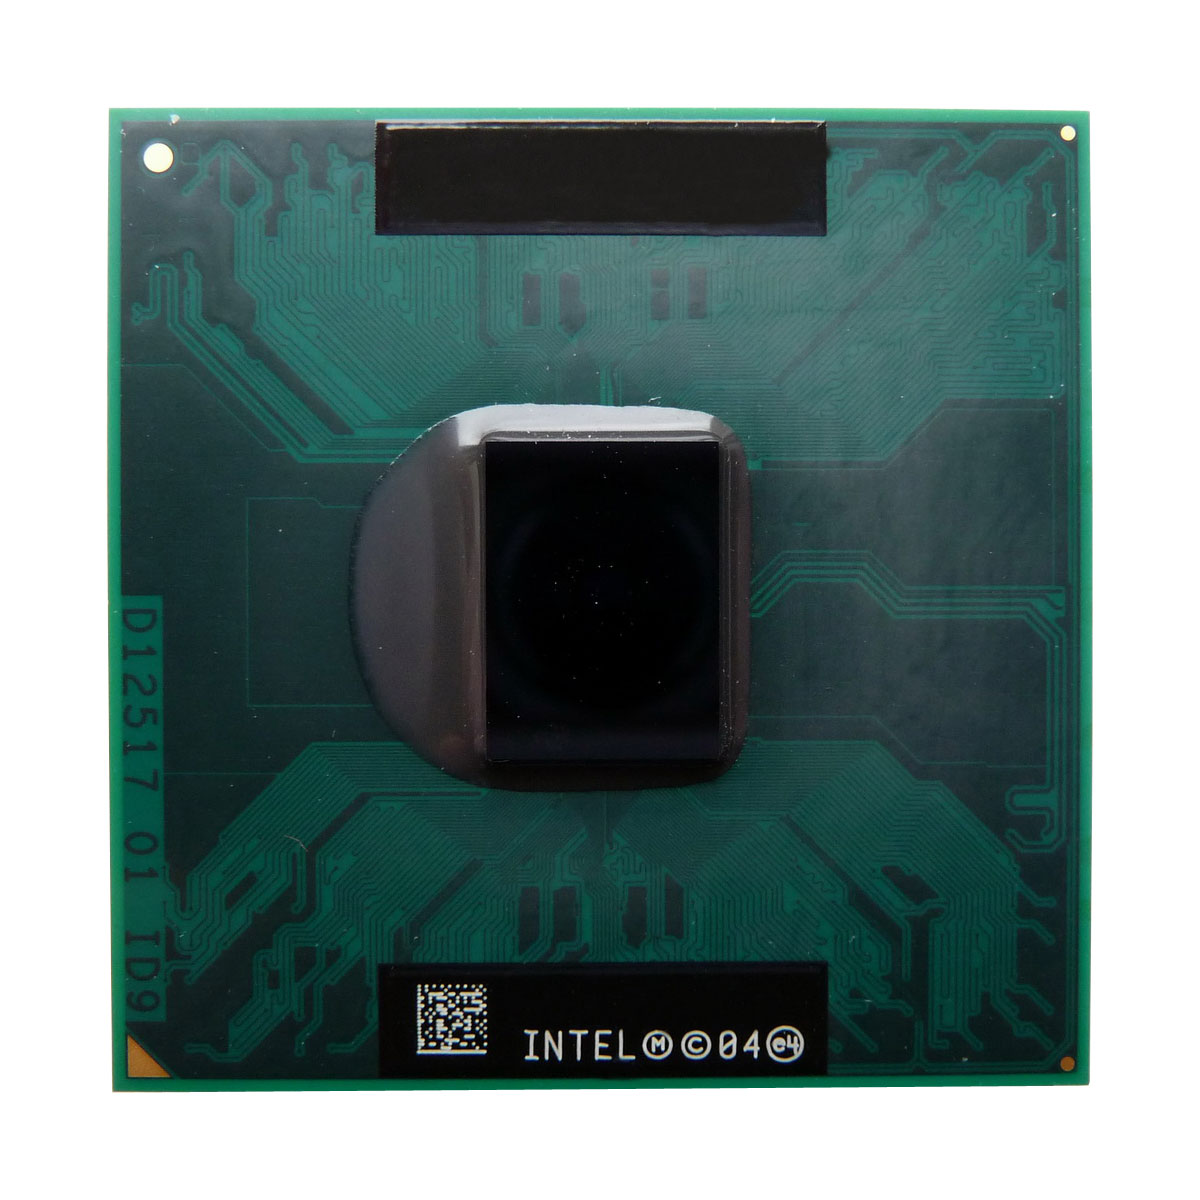 SL8VP | Intel Core DUO T2500 2.0GHz 2MB L2 Cache 667MHz FSB Micro-FCPGA 65NM MOBILE Processor